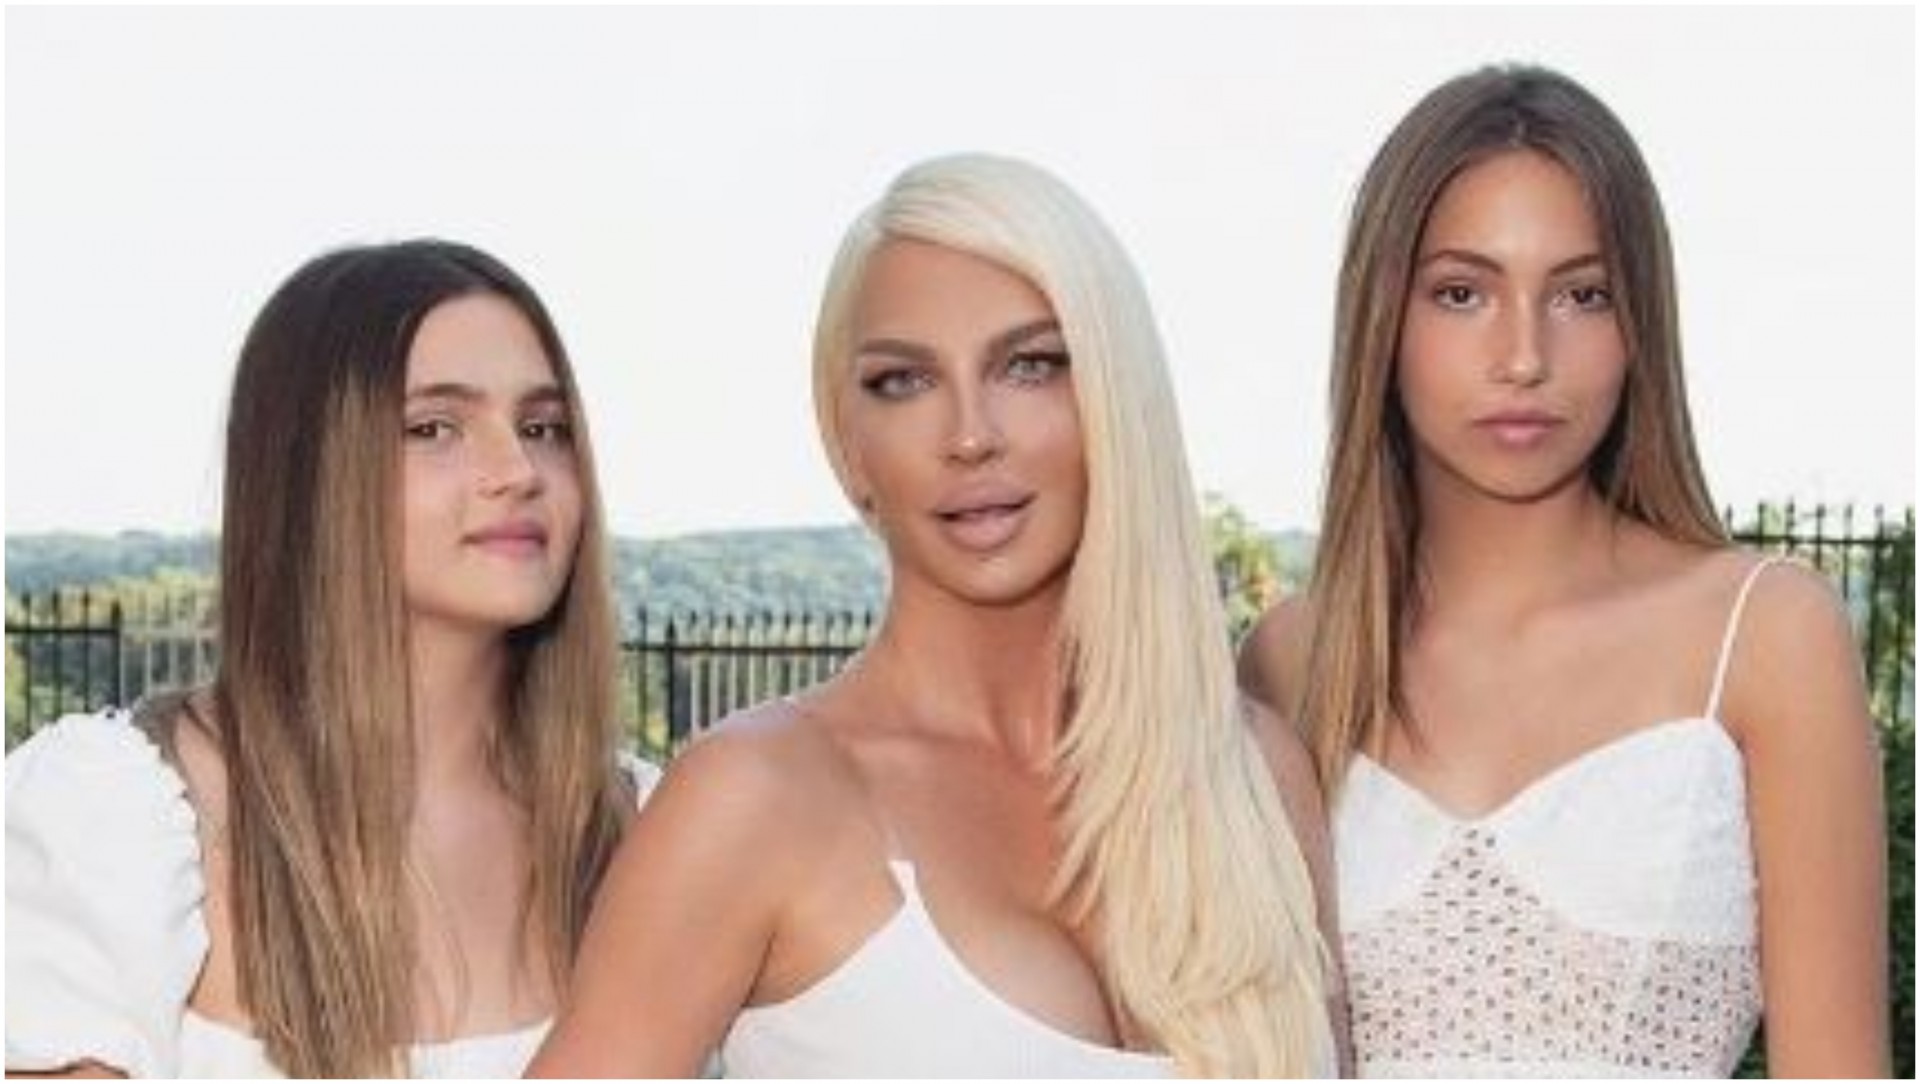 Трите во бело: Сите ја коментираат новата фотка на Јелена Карлеуша со двете ќерки кои пораснаа во вистински мали дами